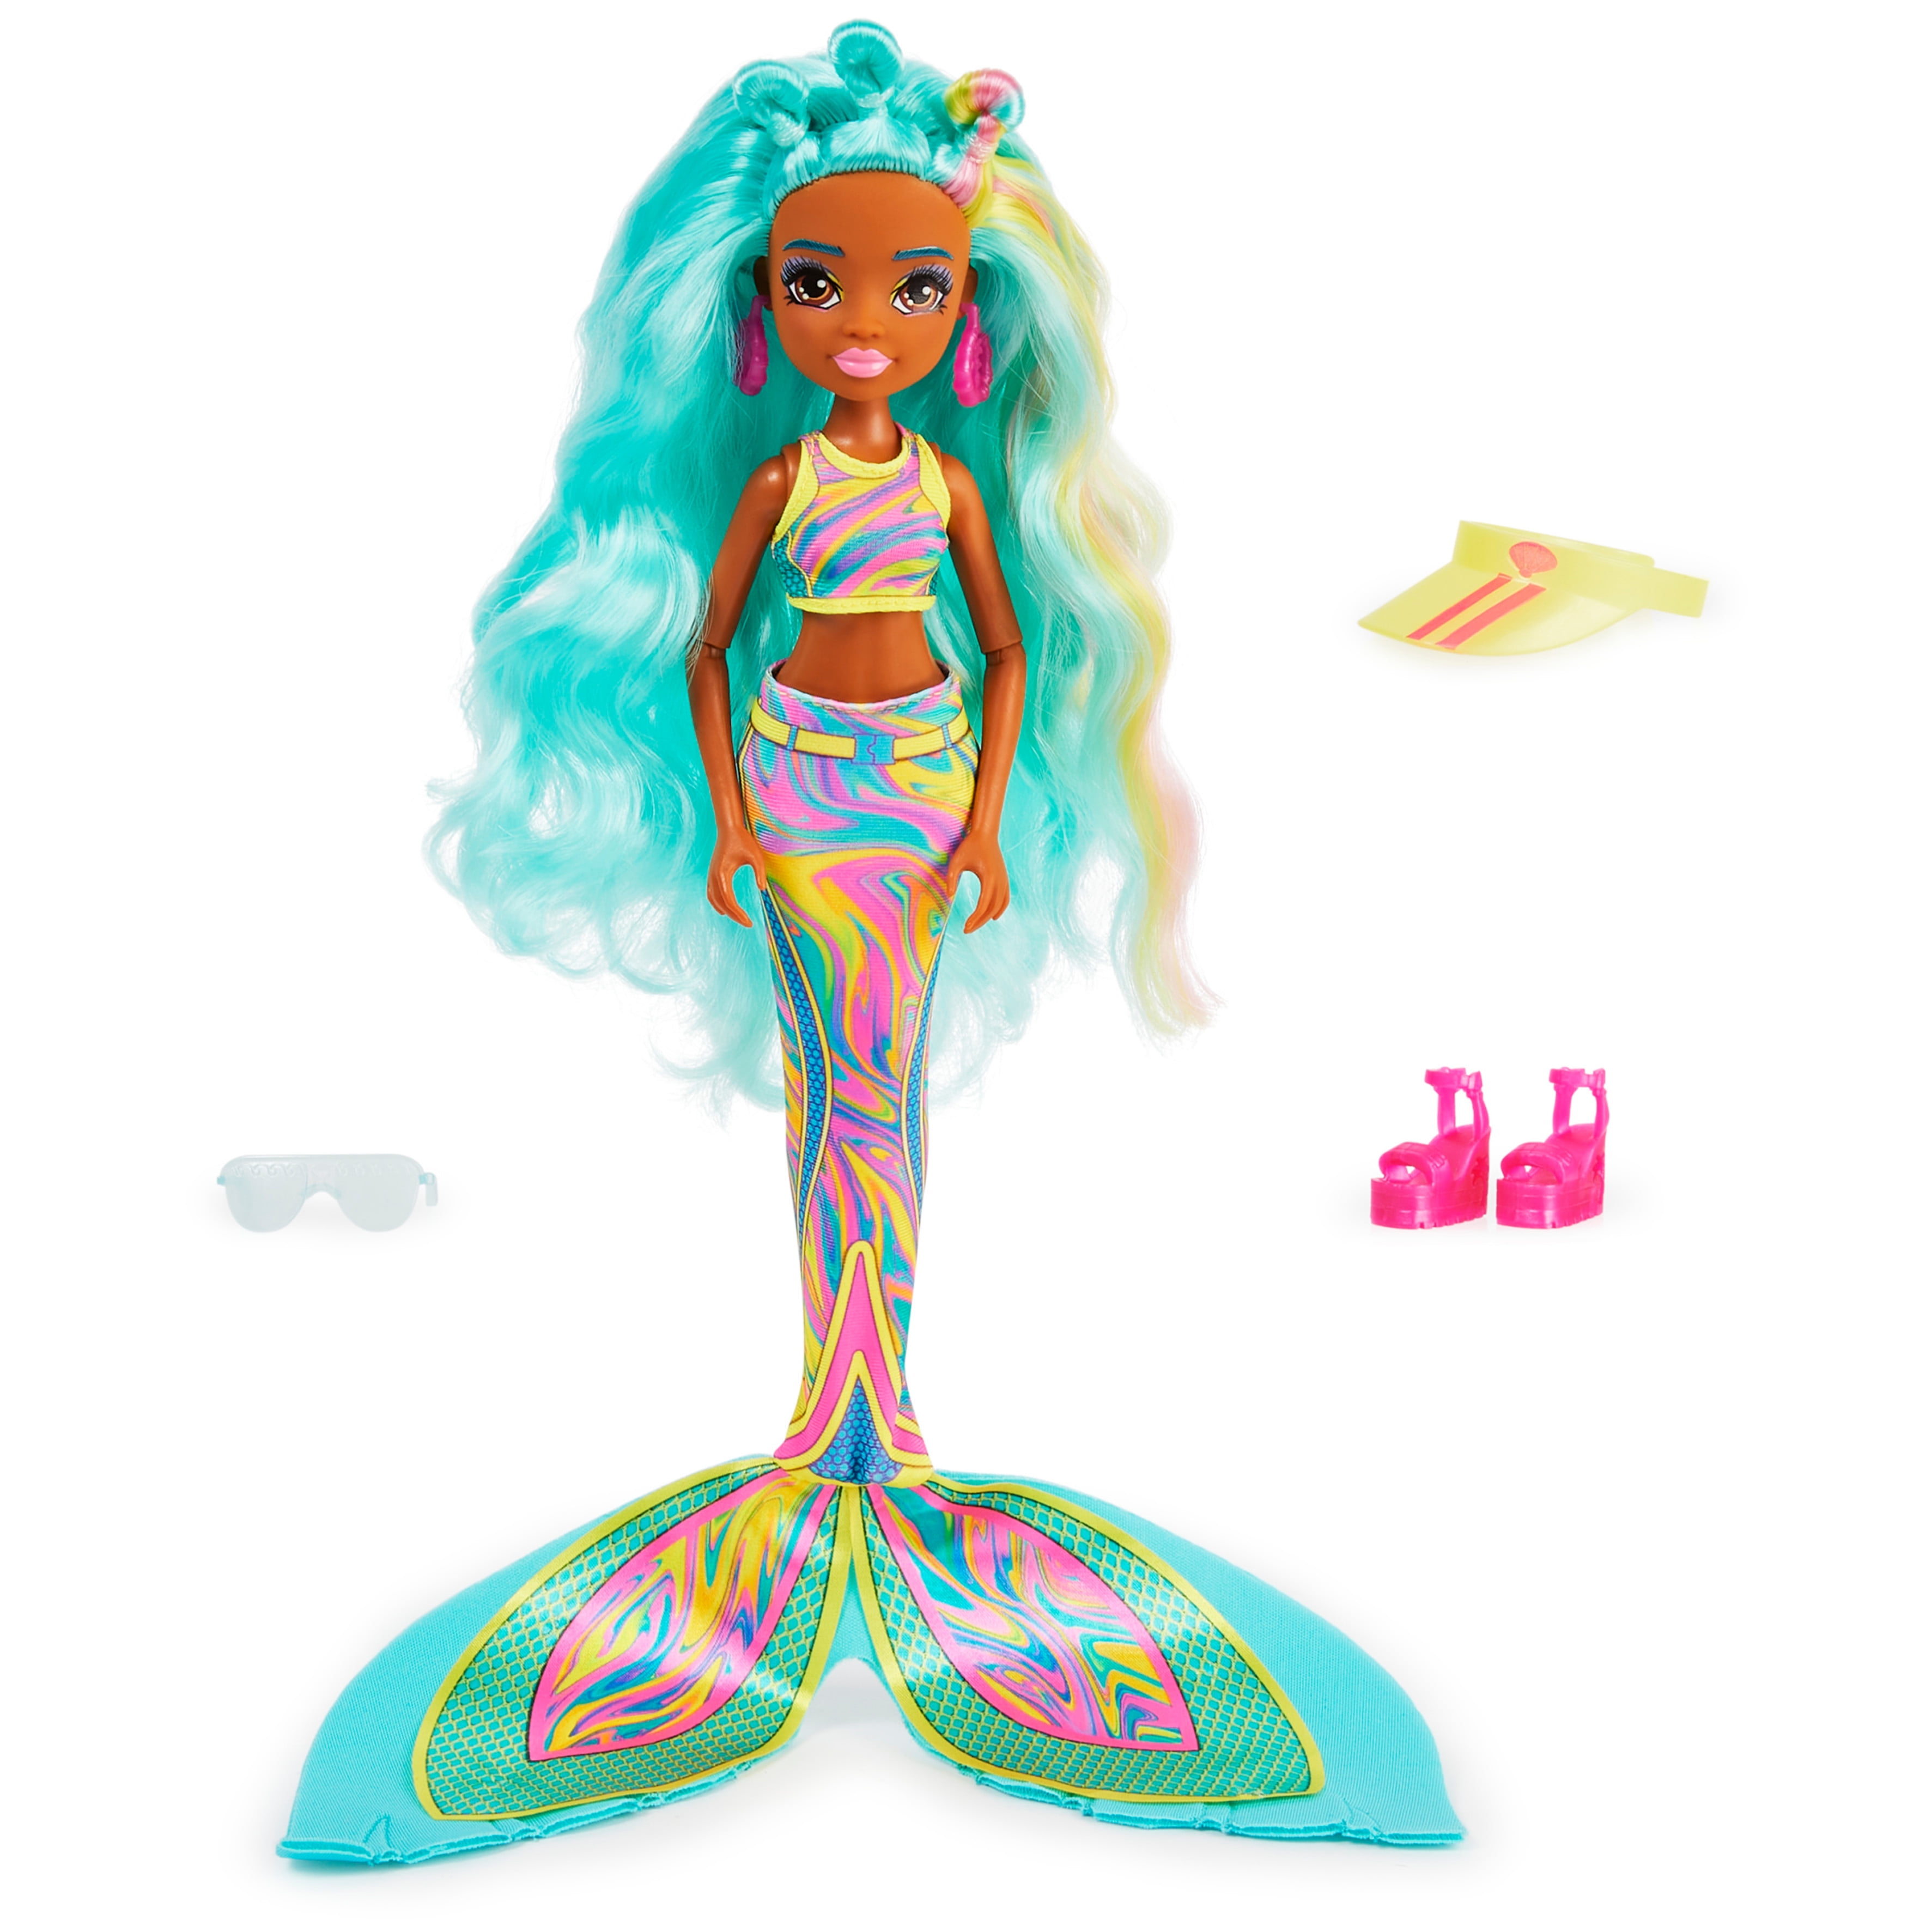 Mermaid High Spring Break Oceanna Doll with Color Change Hair Streaks -  